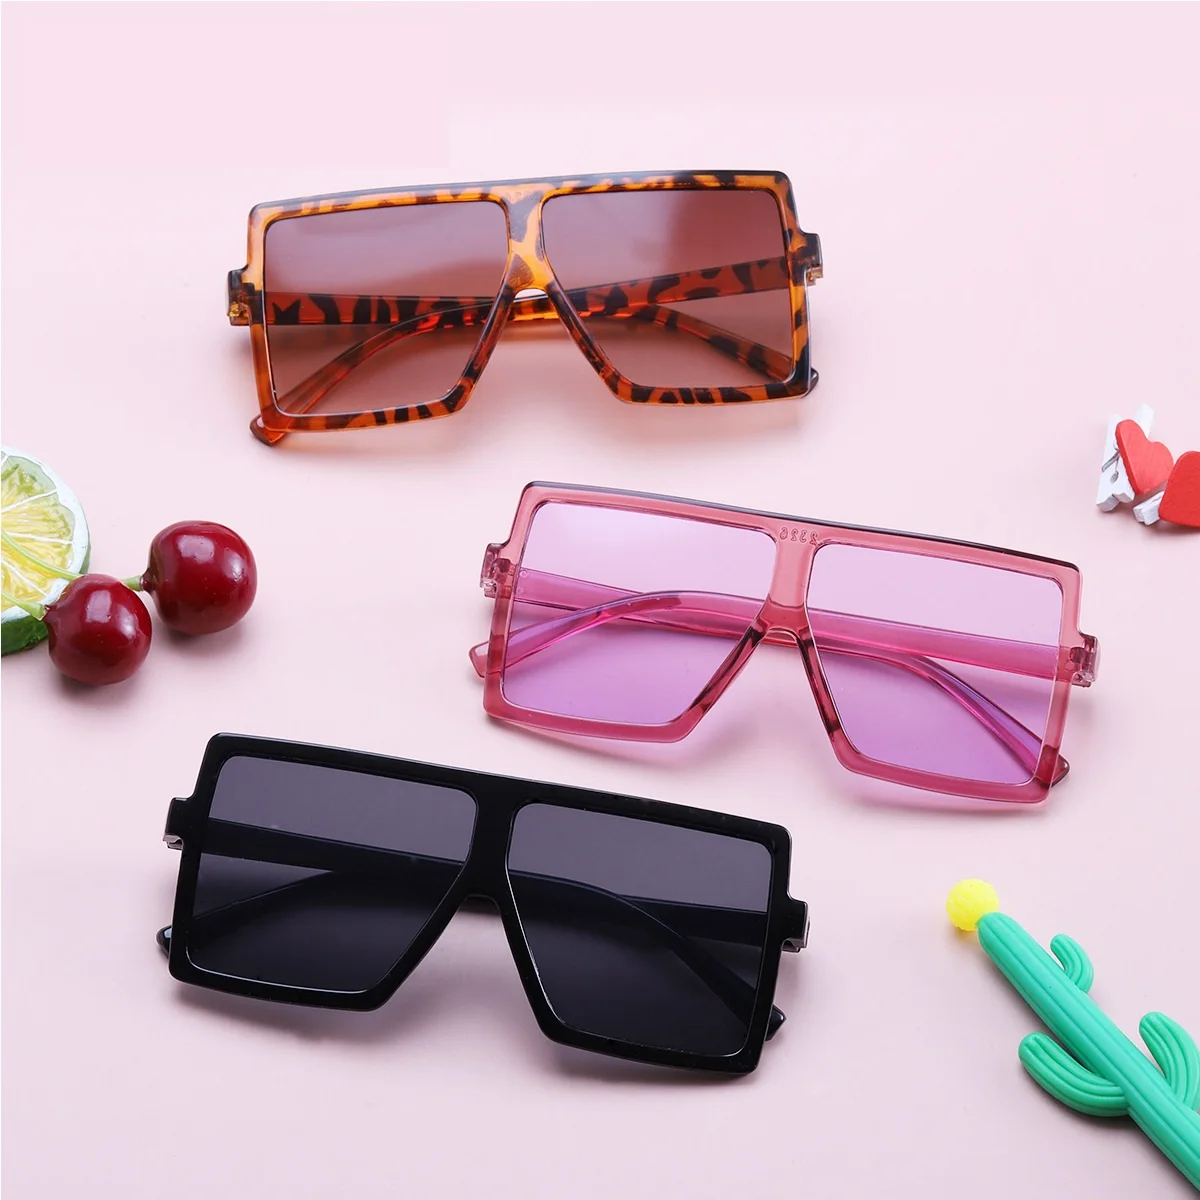 

Lmamba Square Kids Sunglasses 2021 Festival Sun Glasses Boys Fashion Children Shades UV400 Eyeglasses Girls